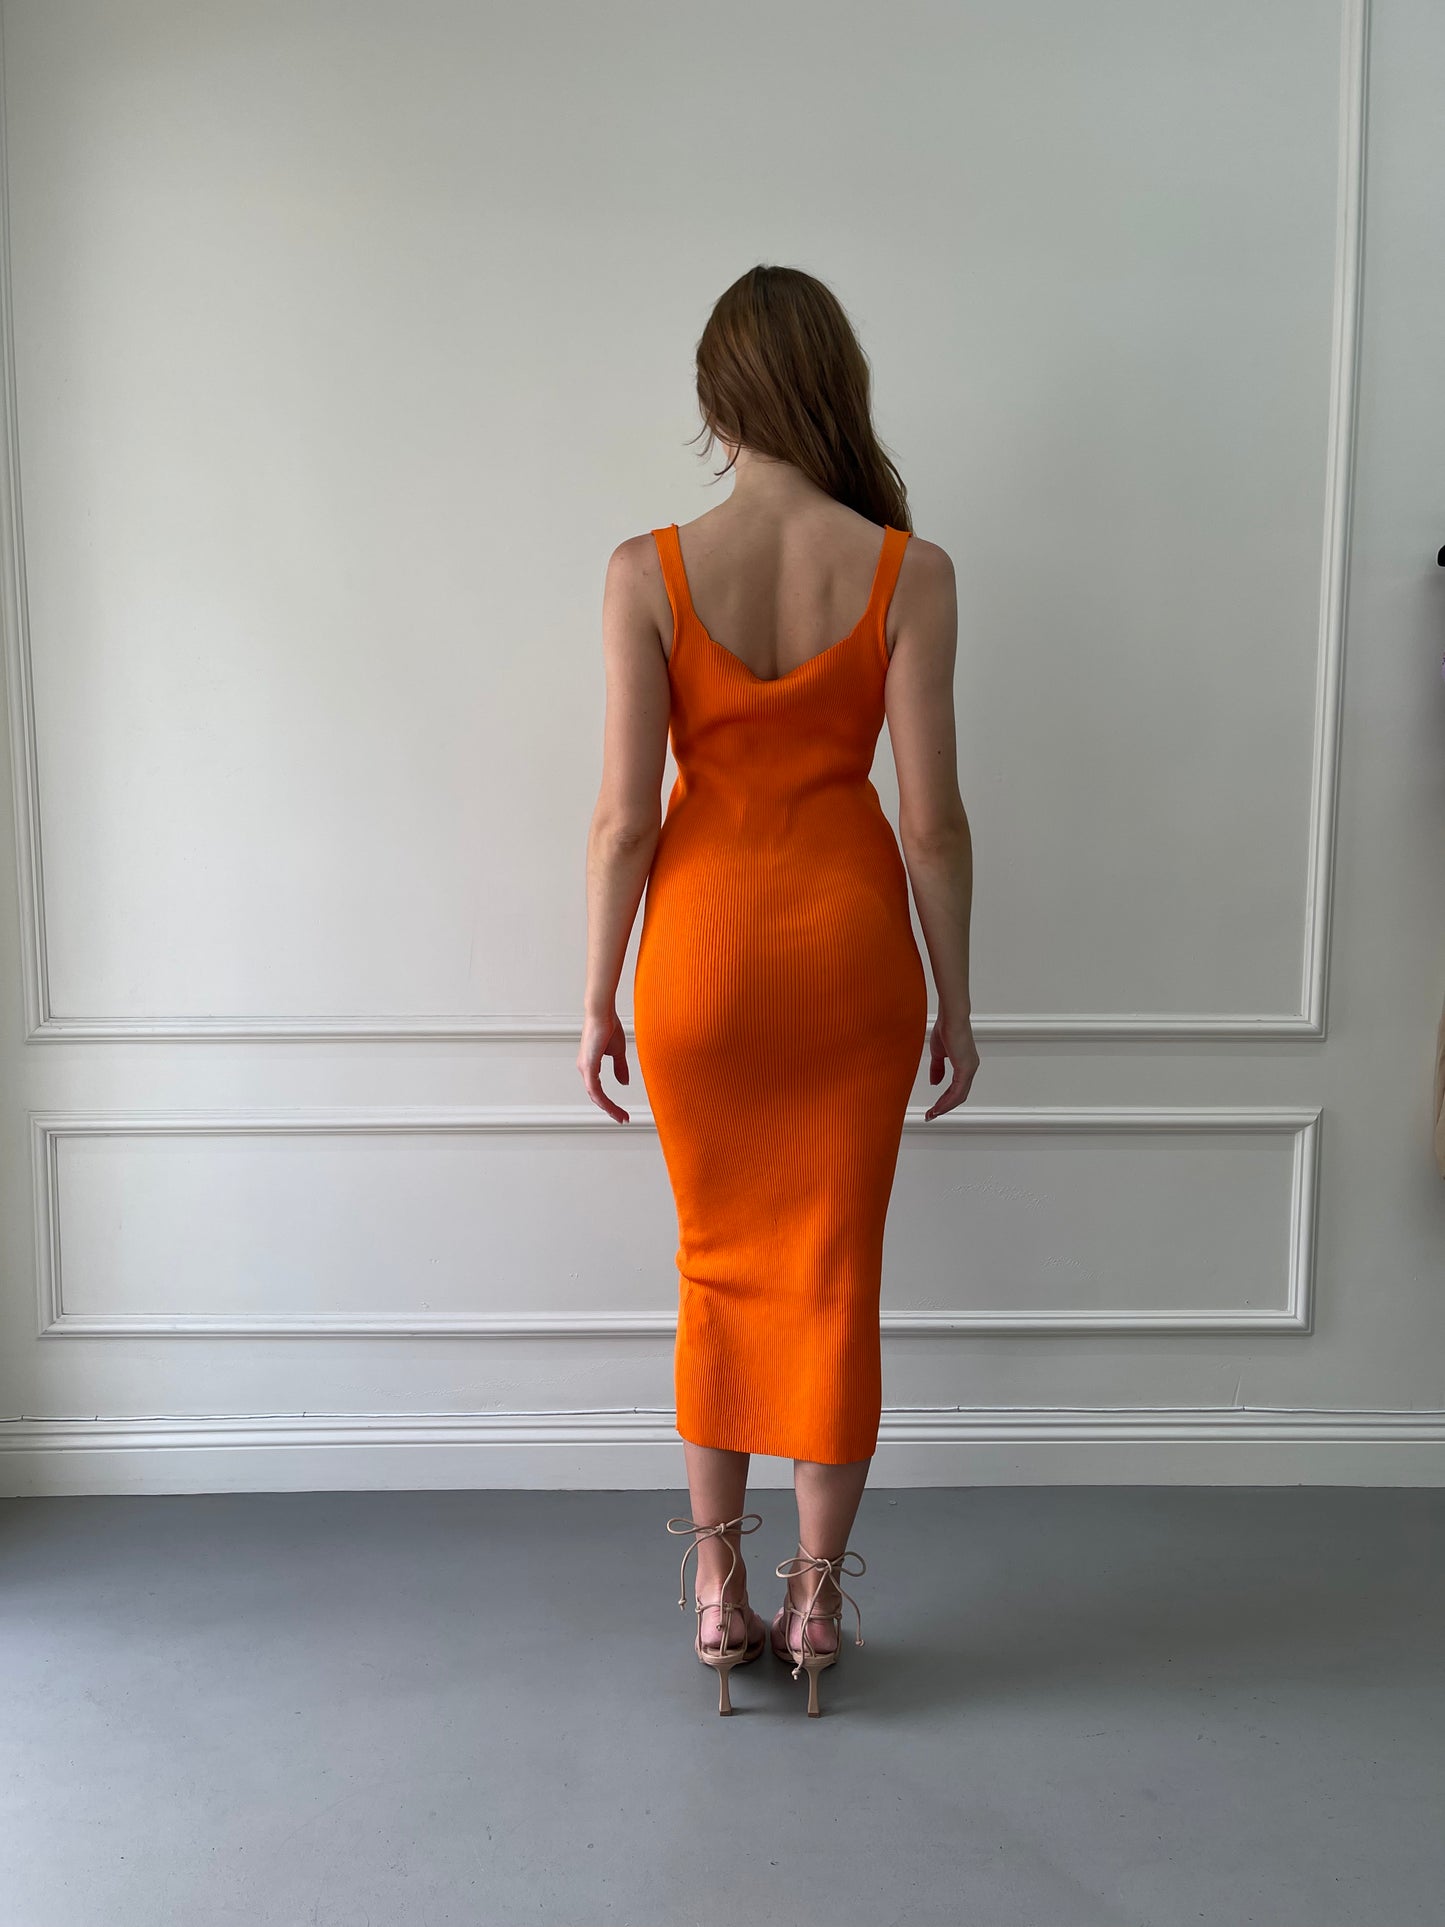 Orange dress